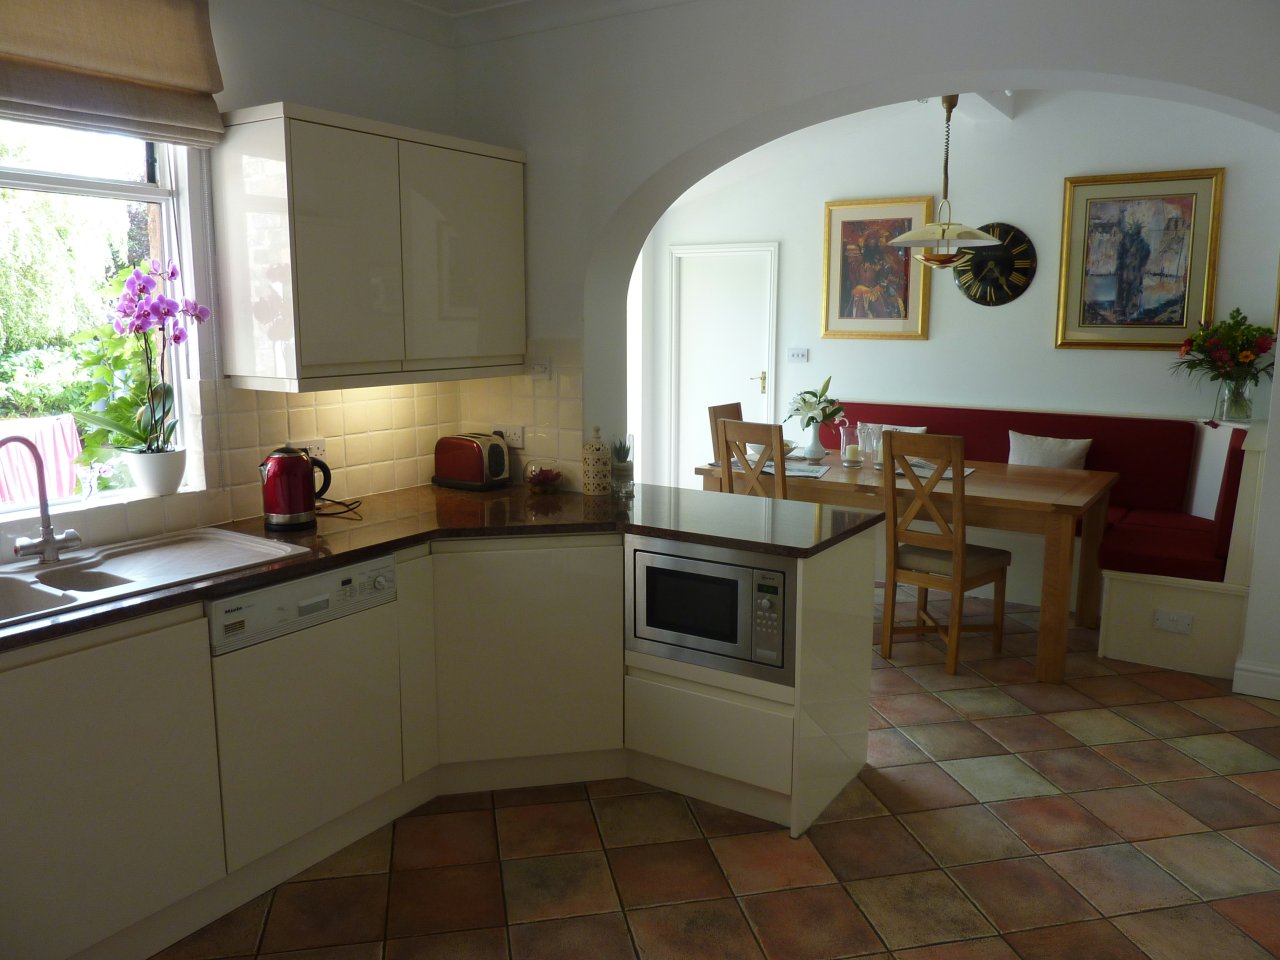 JPEG image - Finished kitchen at last! ...